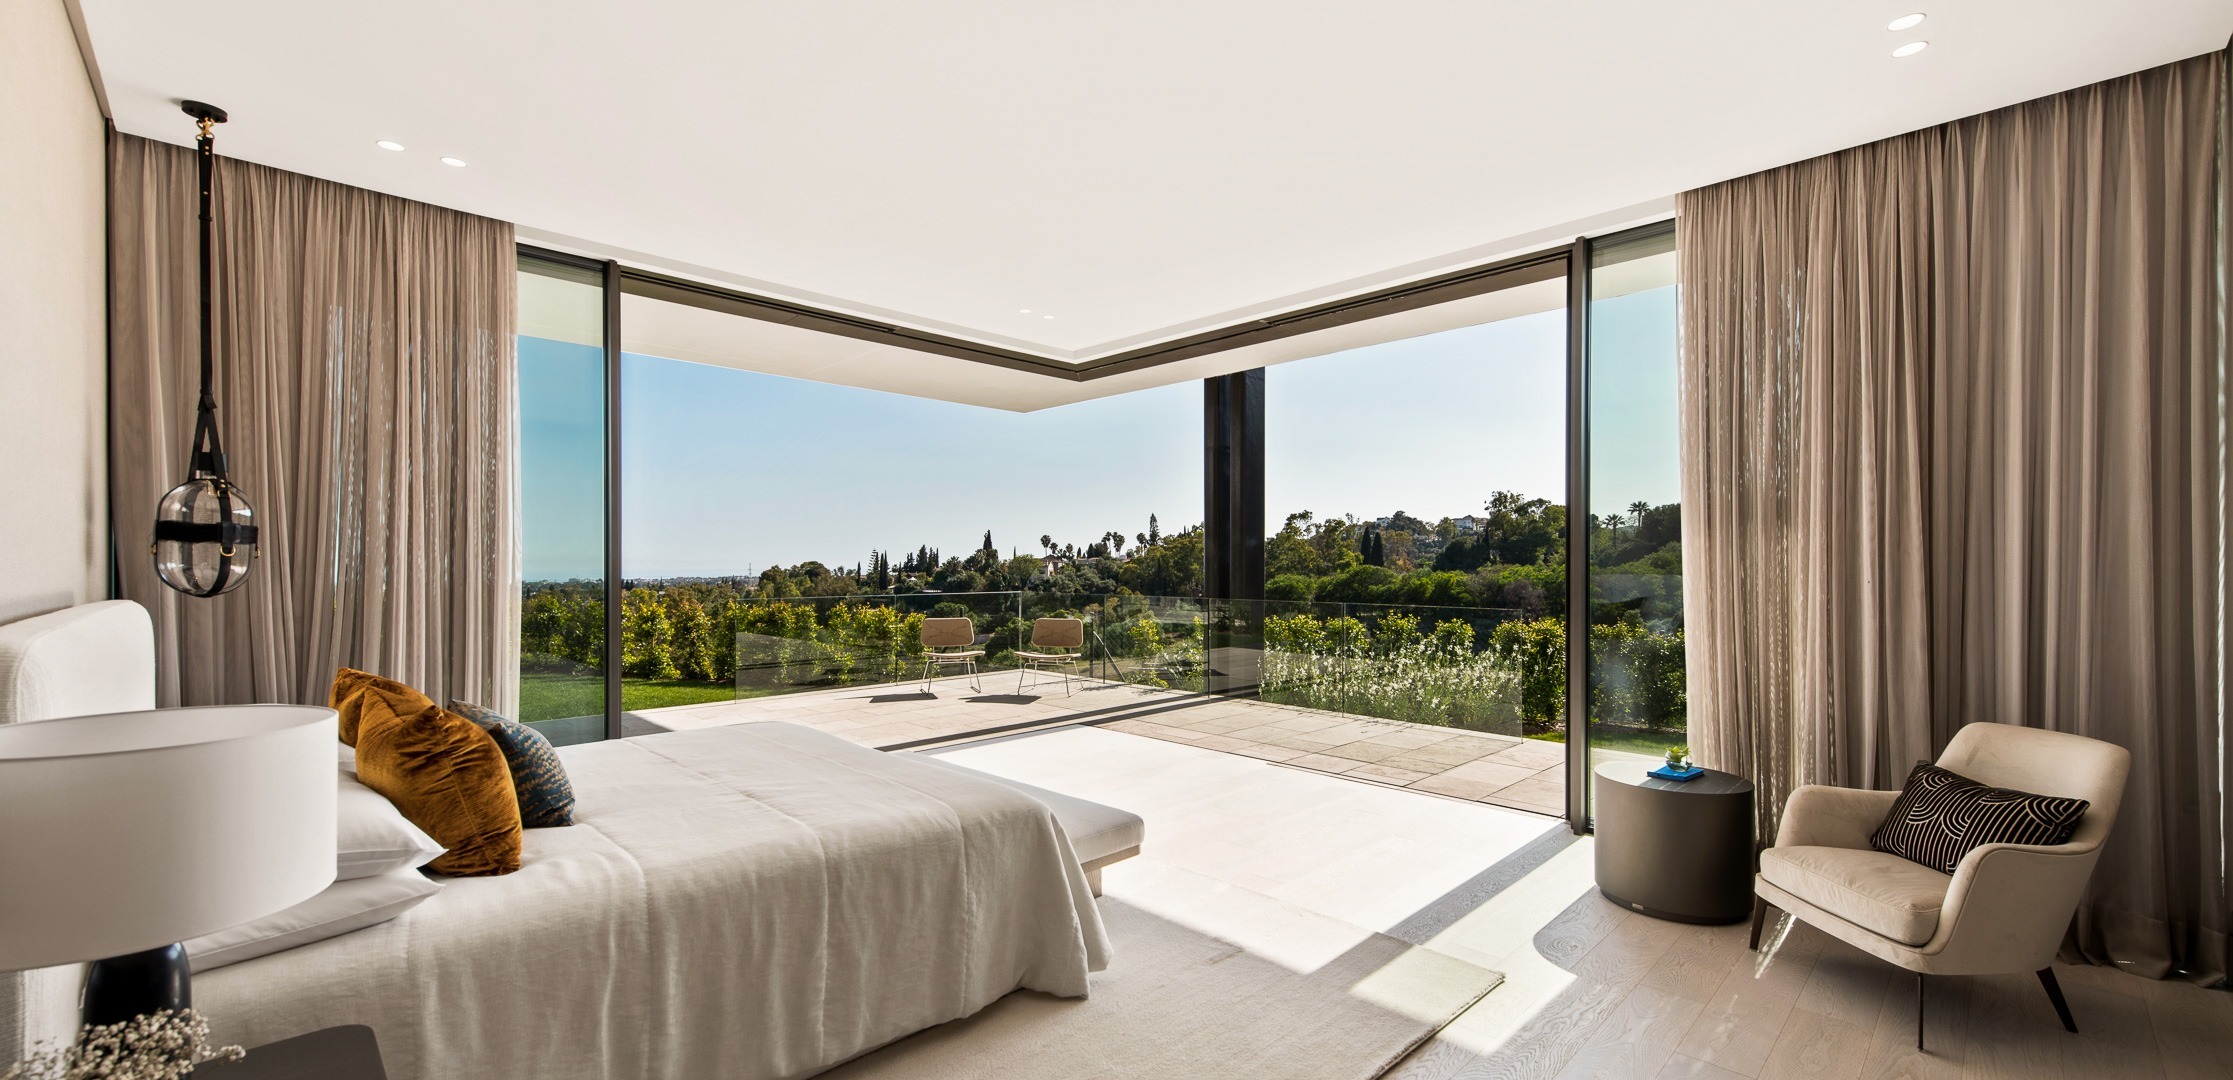 Exclusive top villa room with views- El Herrojo - Benahavis